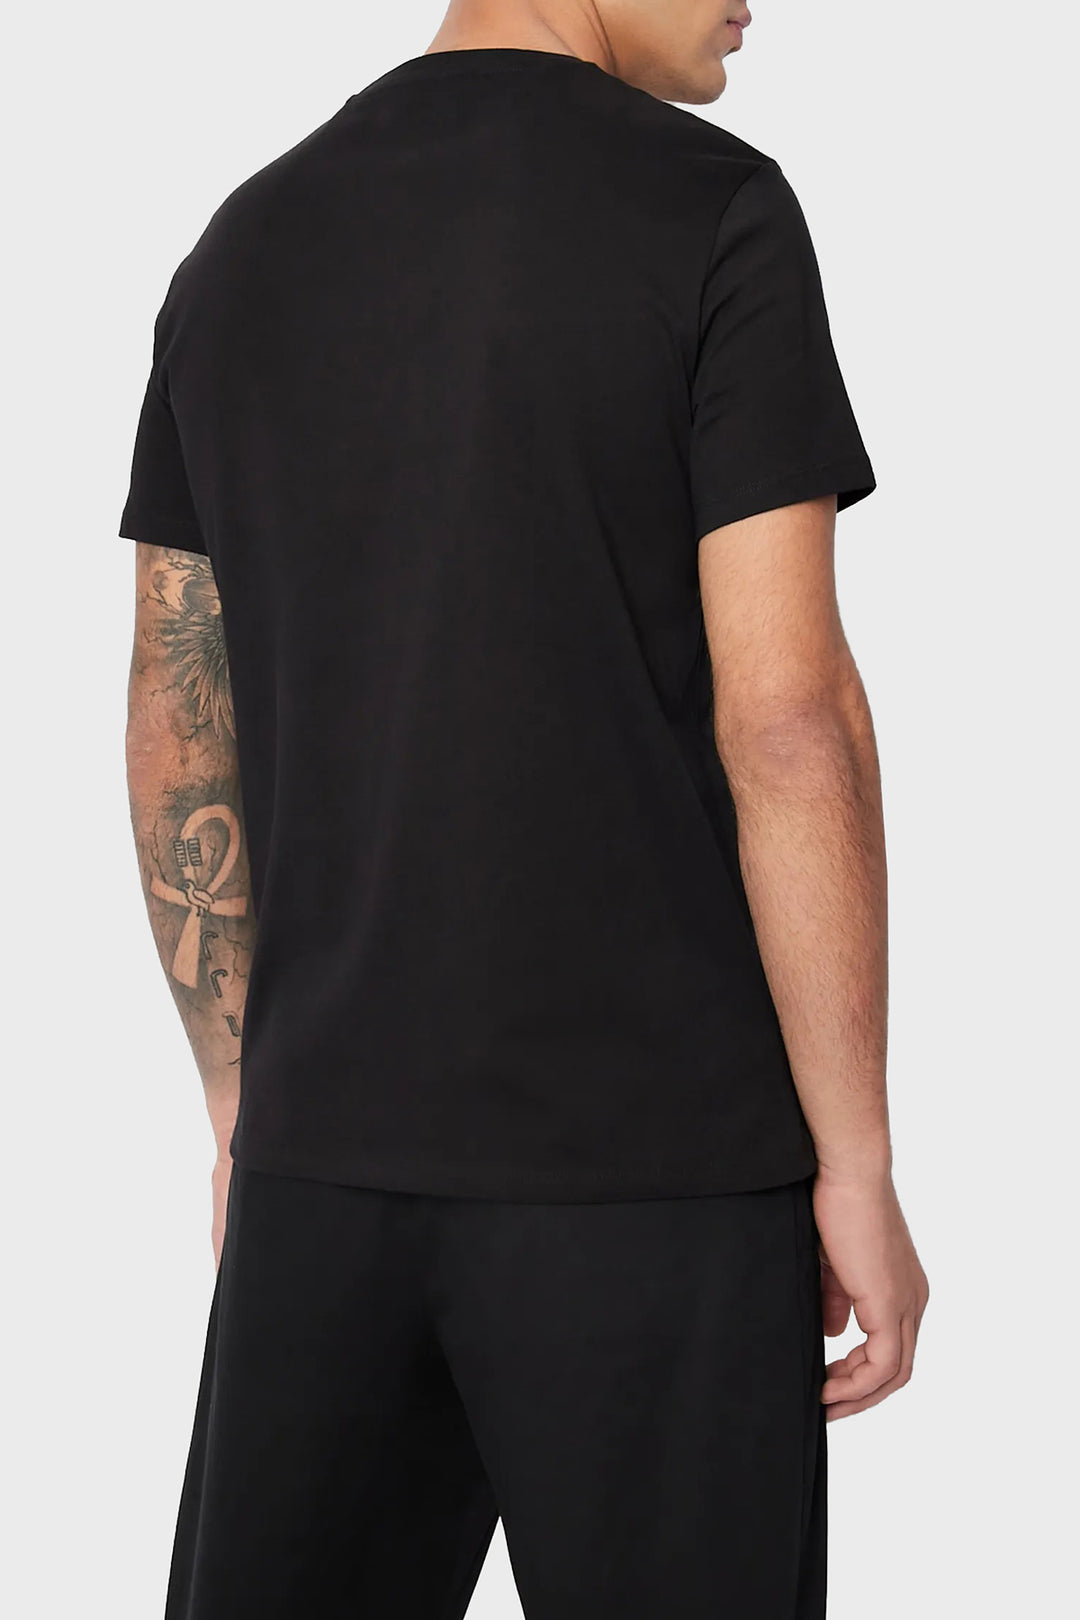 Ar.mani Mens S/S R-N T-Shirts TM-6LZTAC (Black)